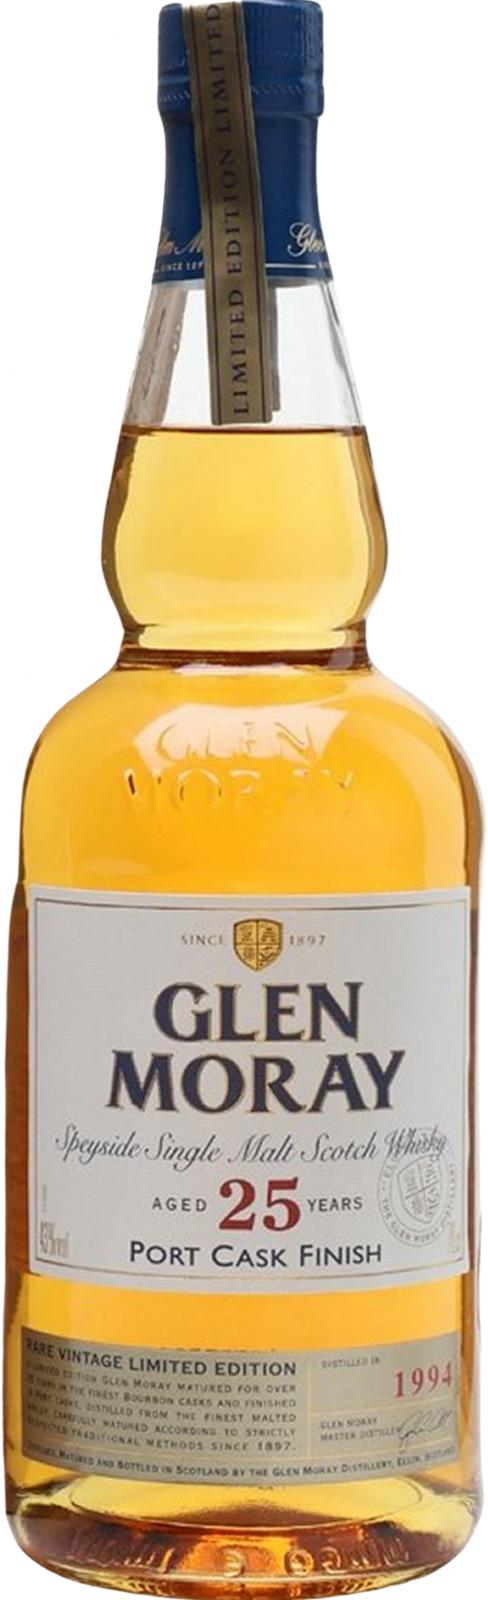 Glen Moray 1994